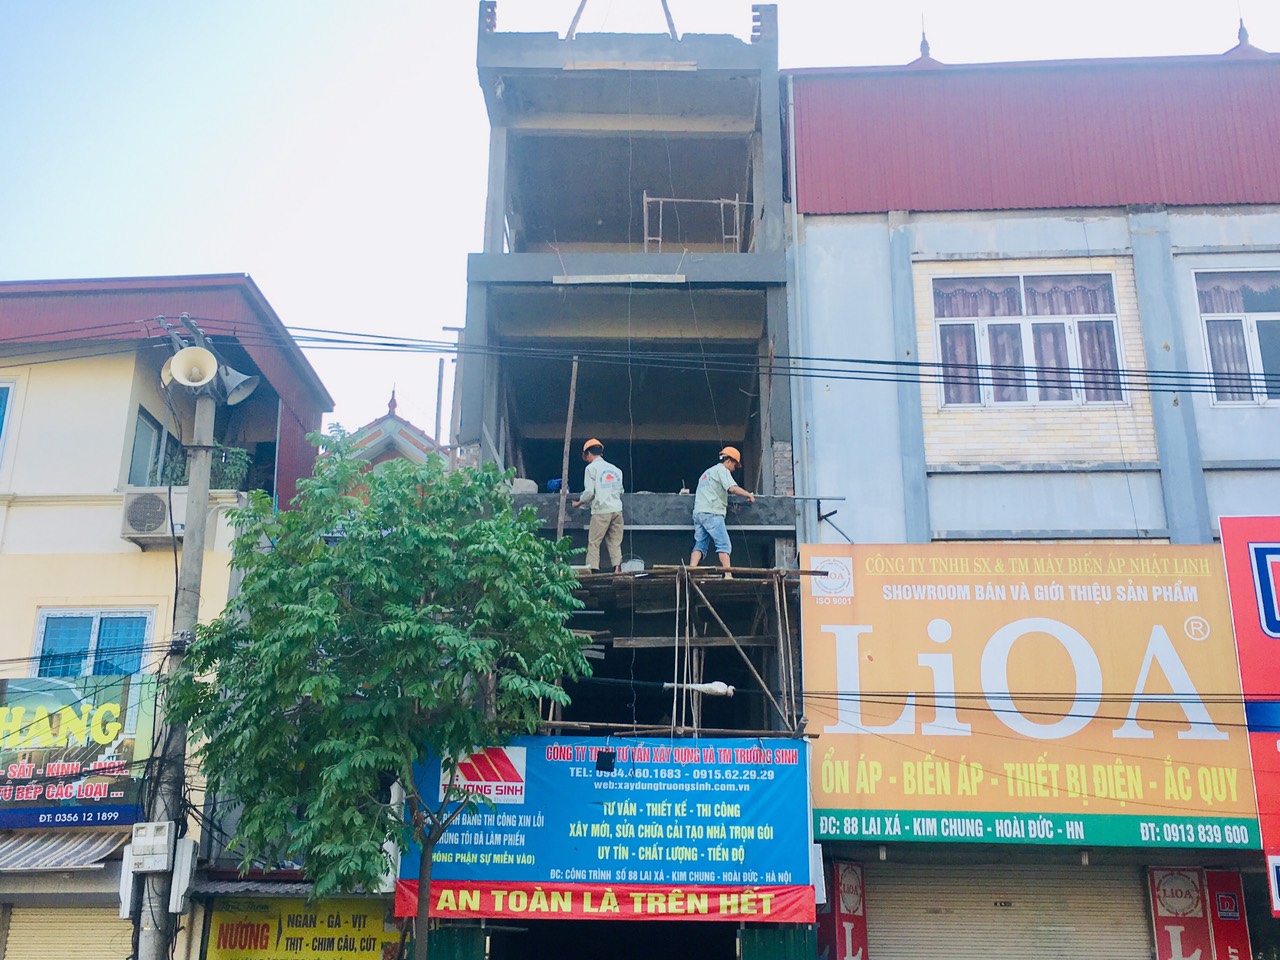 Báo giá xây thô tại Hà Nội 2020-xây nhà giá rẻ uy tín chất lượng